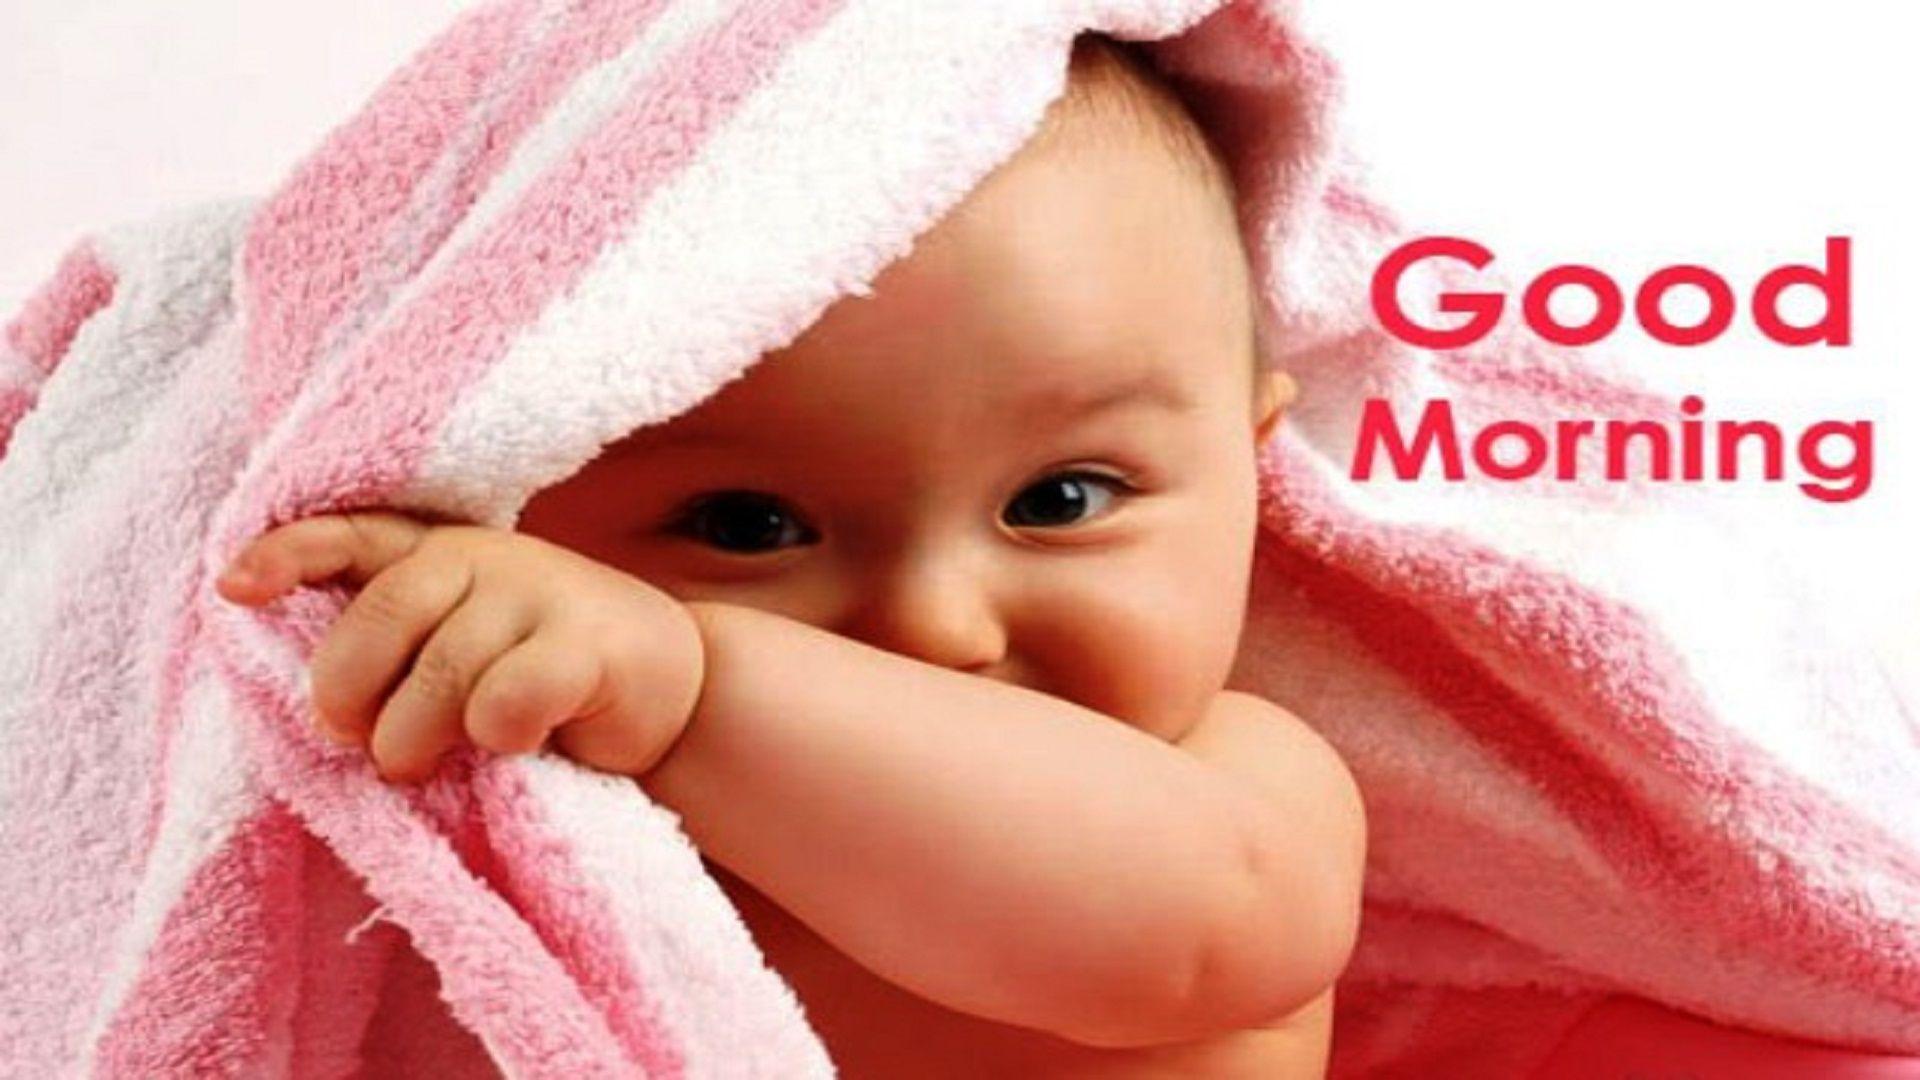 Baby Saying HD Good Morning Wallpaper Image Free